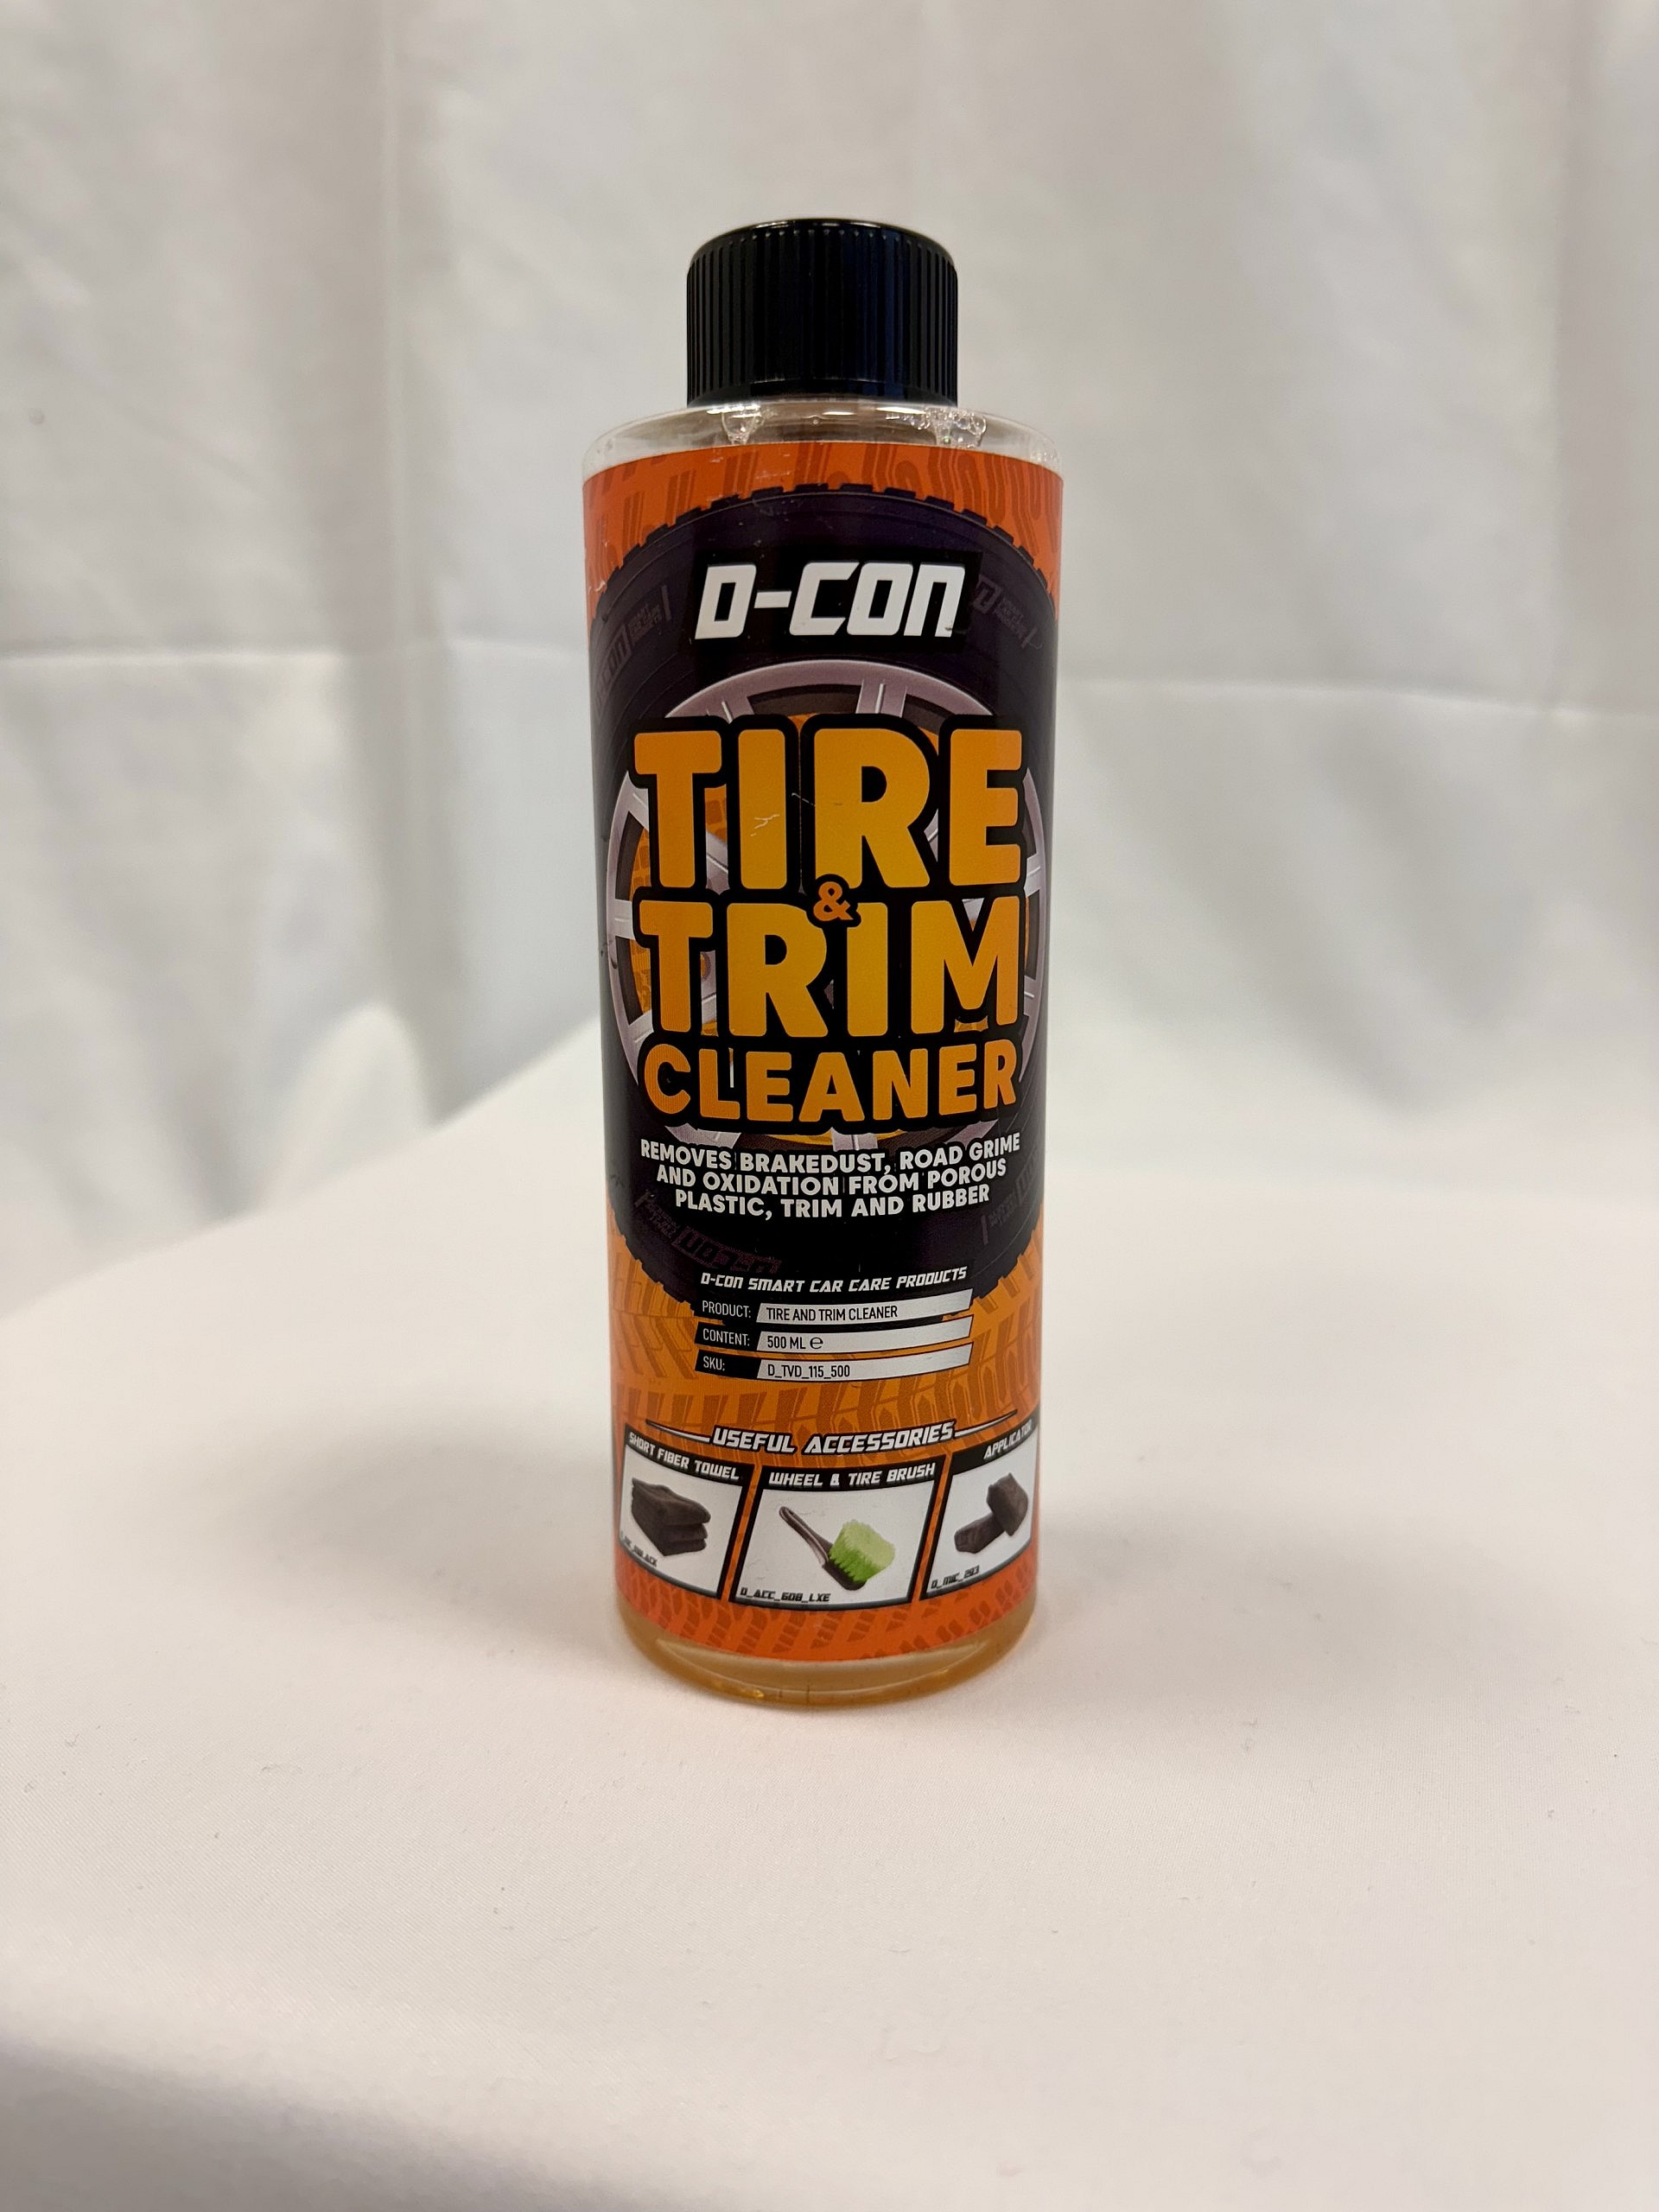 D-Con Tire & Trim Cleaner von vorne